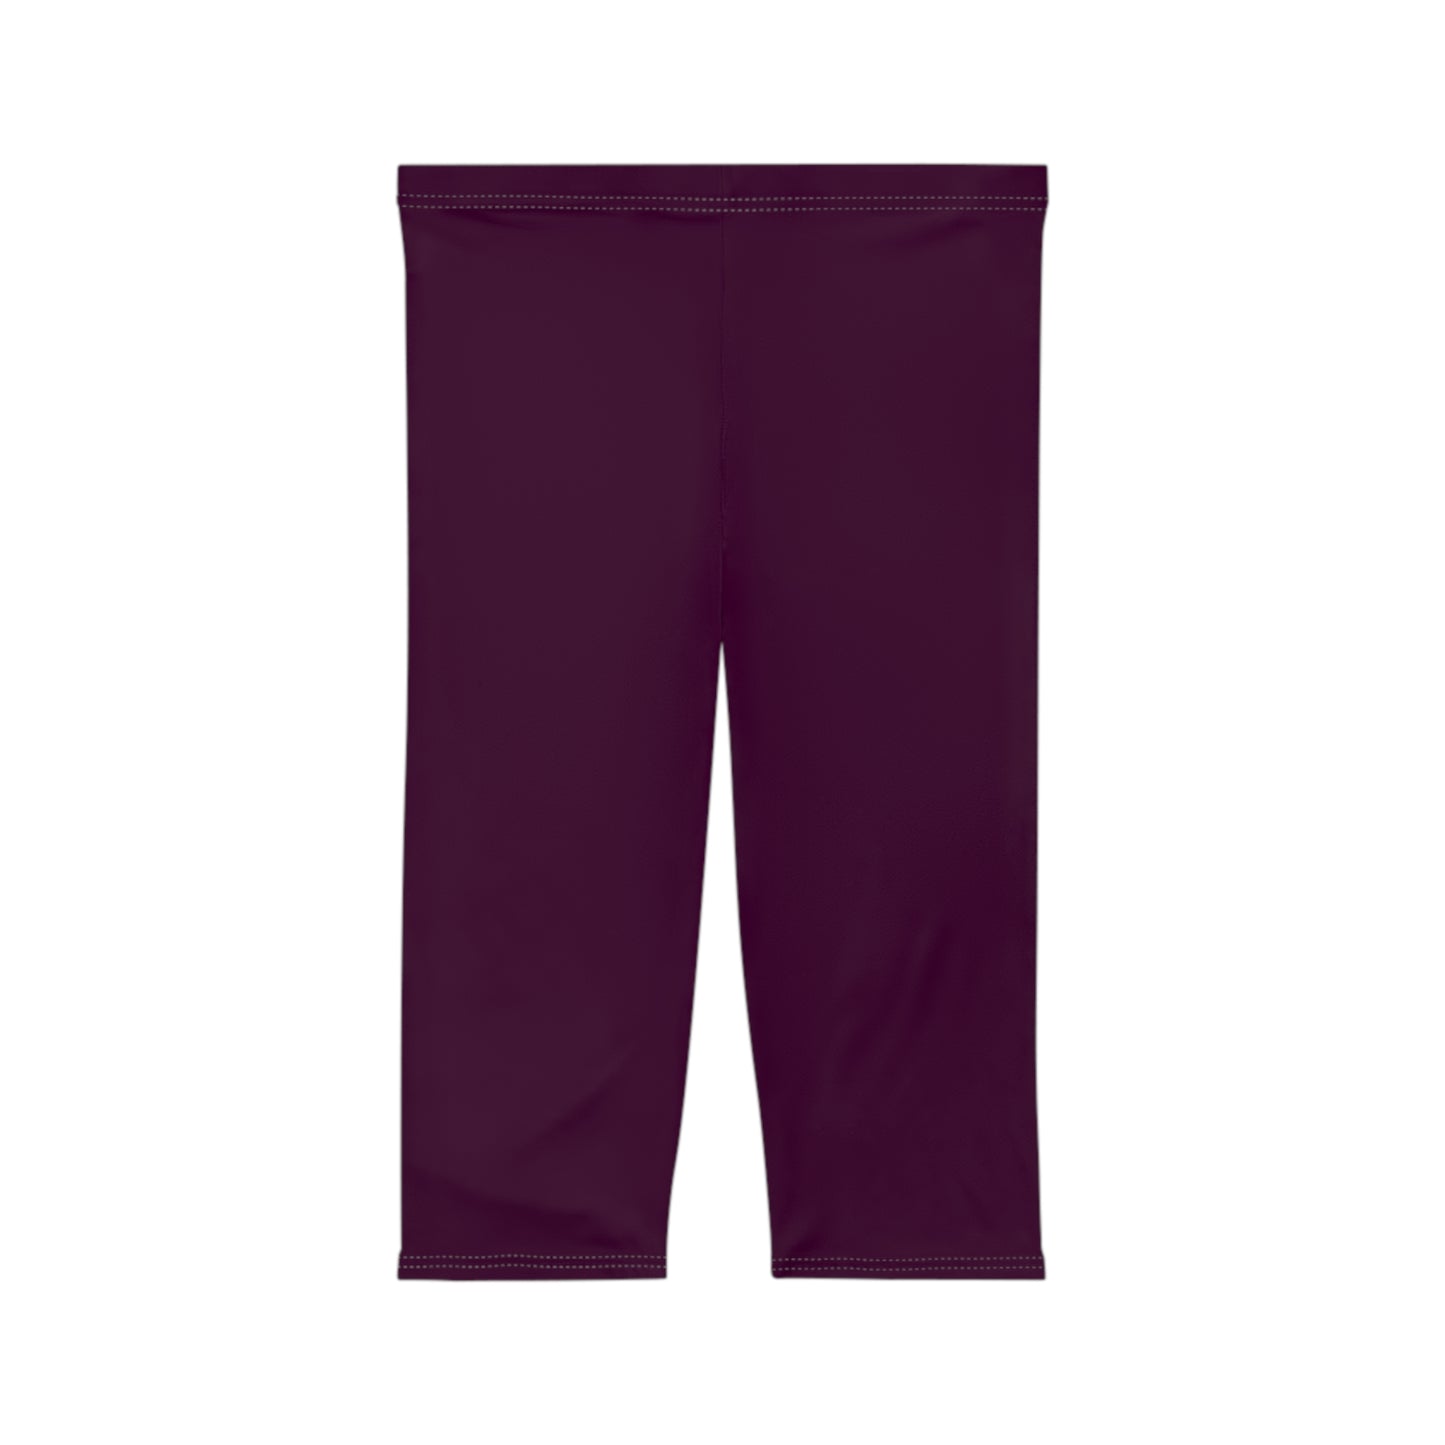 Deep Burgundy - Capri Shorts